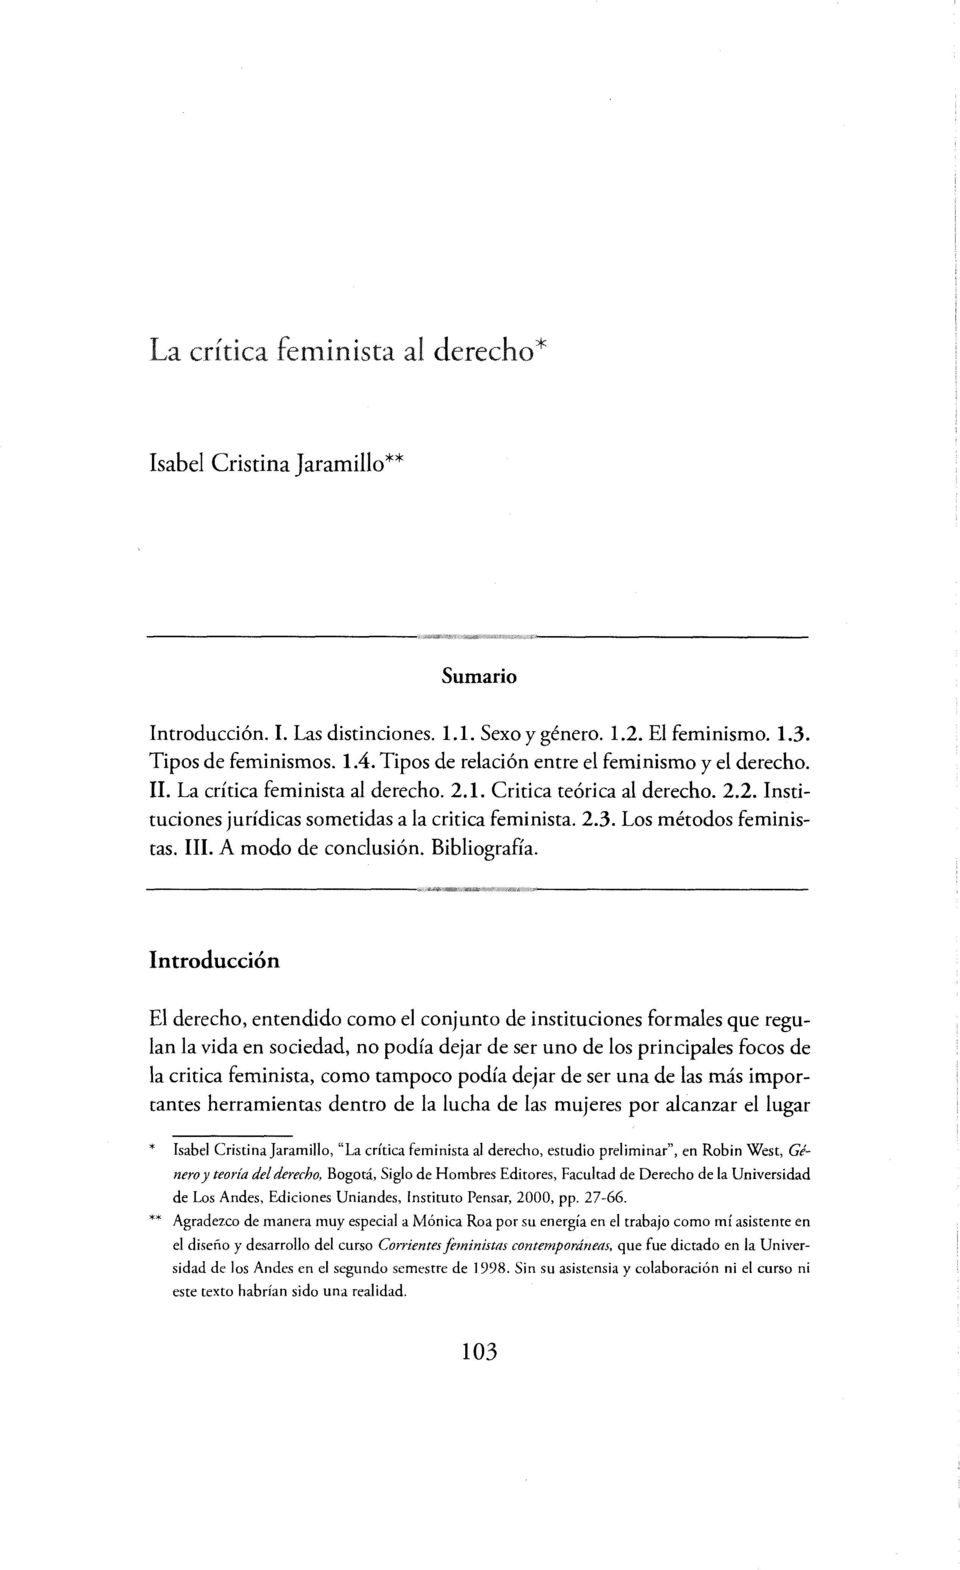 Los métodos feministas. III. A modo de conclusión. Bibliografía.